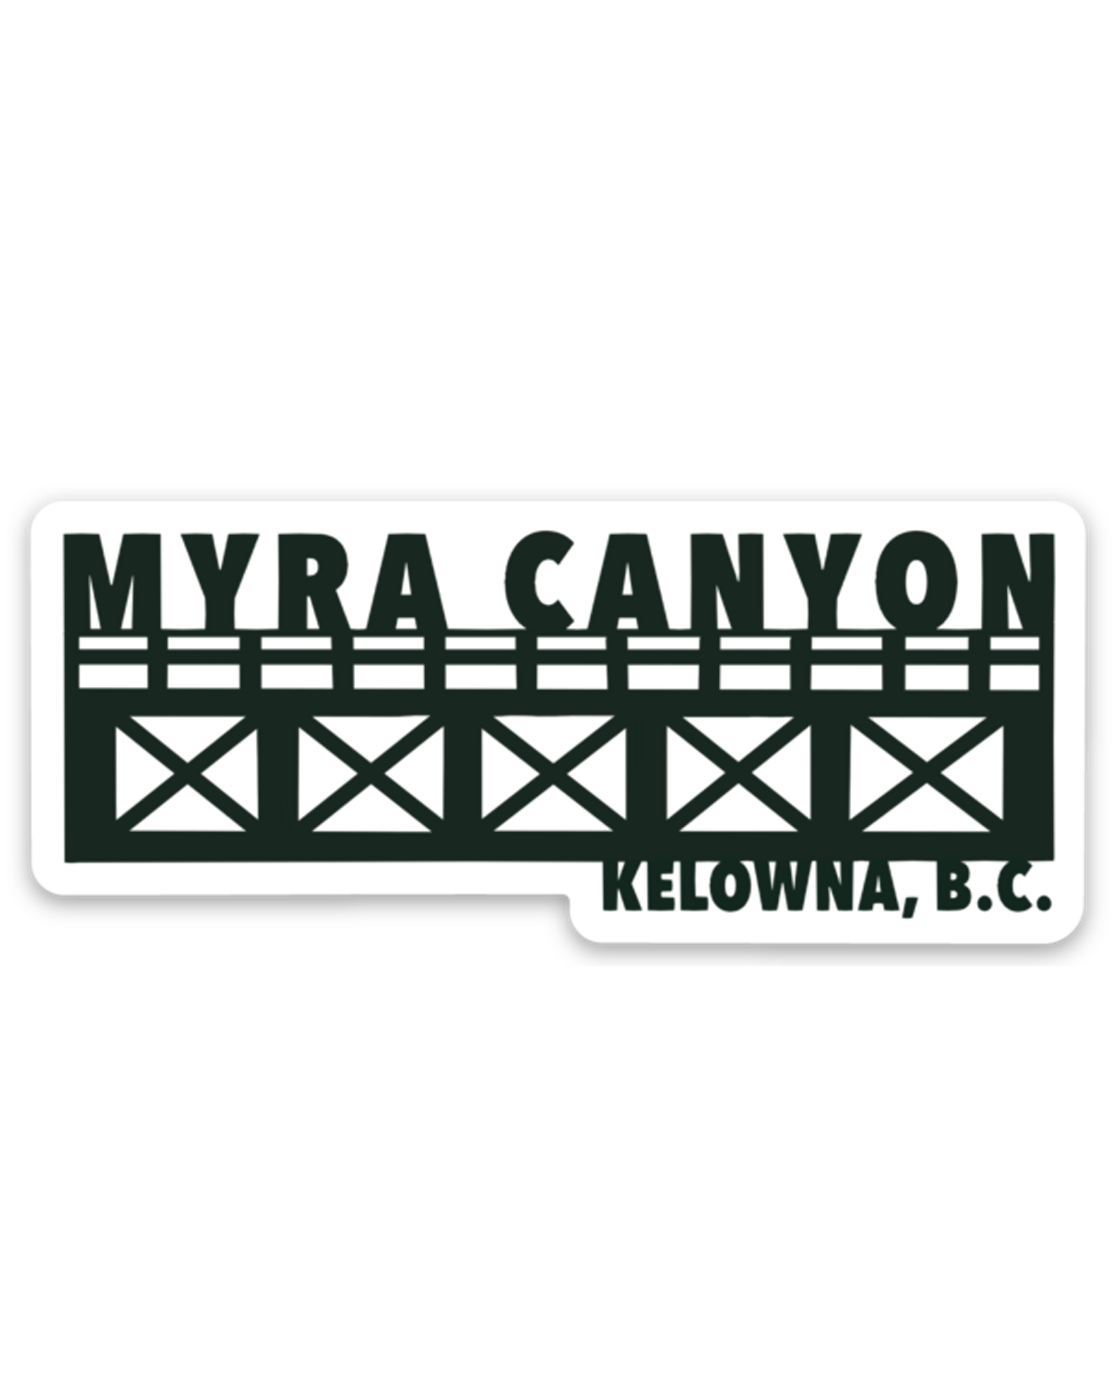 'Myra Canyon' Trestle Vinyl Sticker